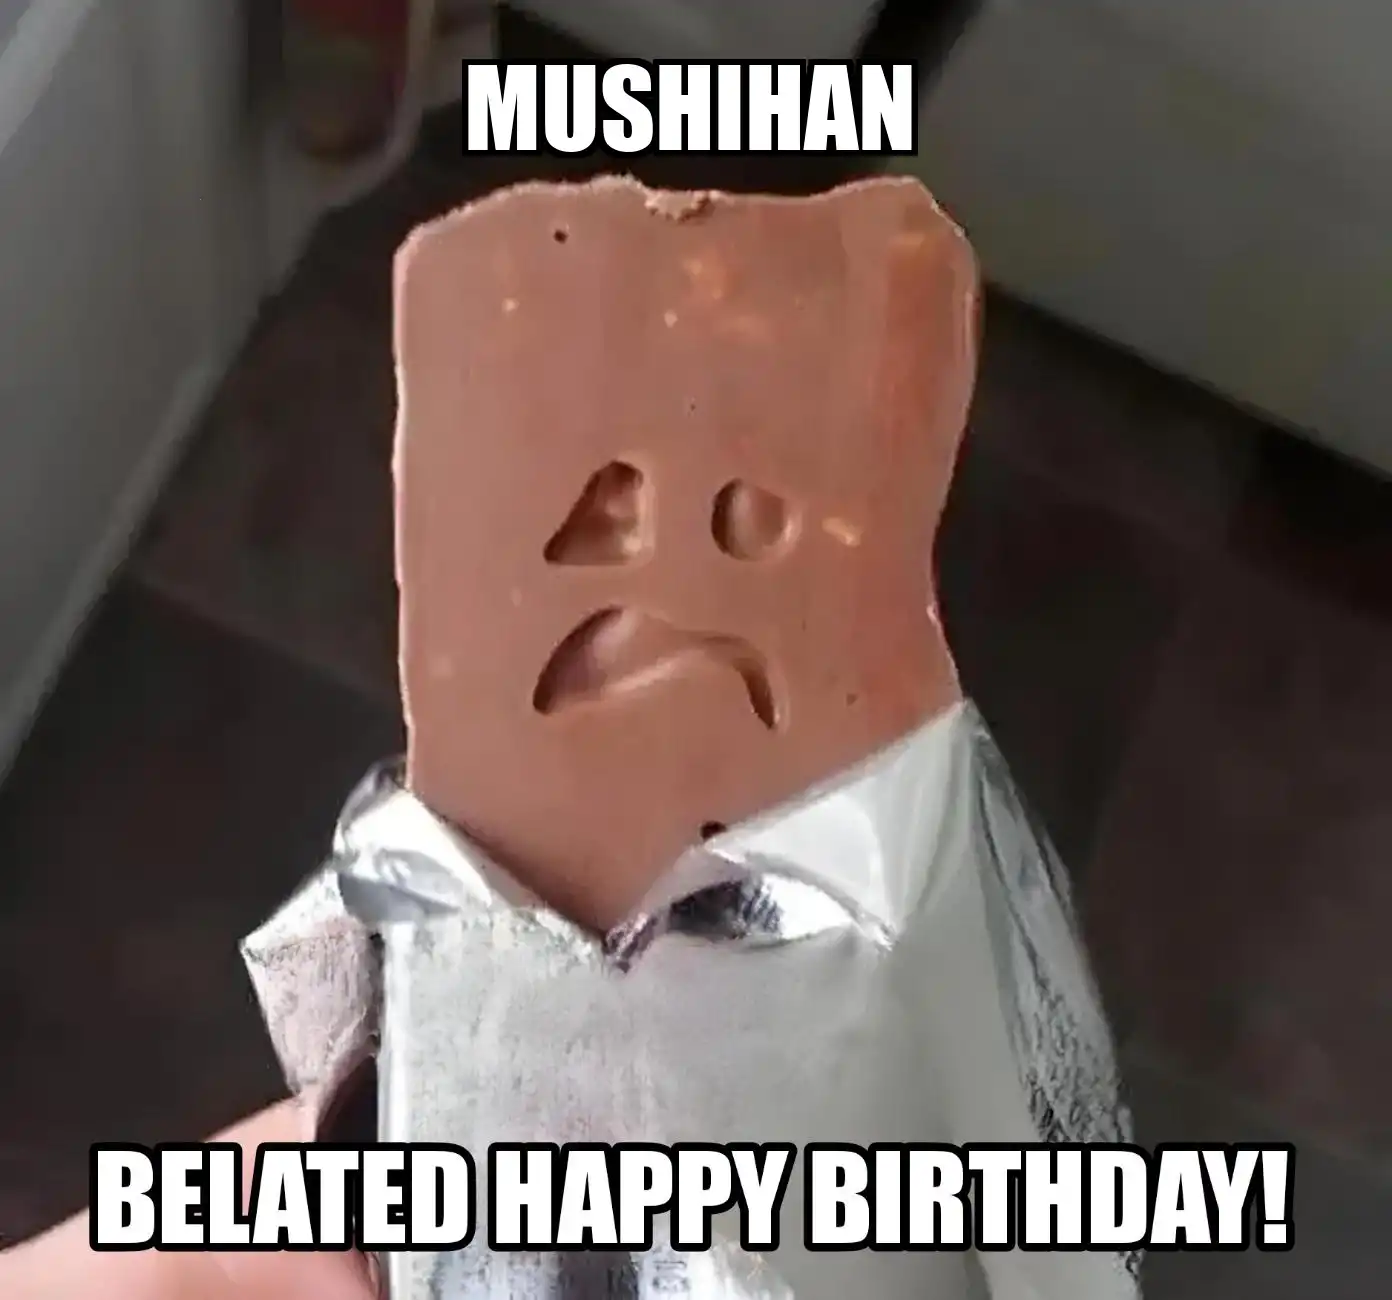 Happy Birthday Mushihan Belated Happy Birthday Meme